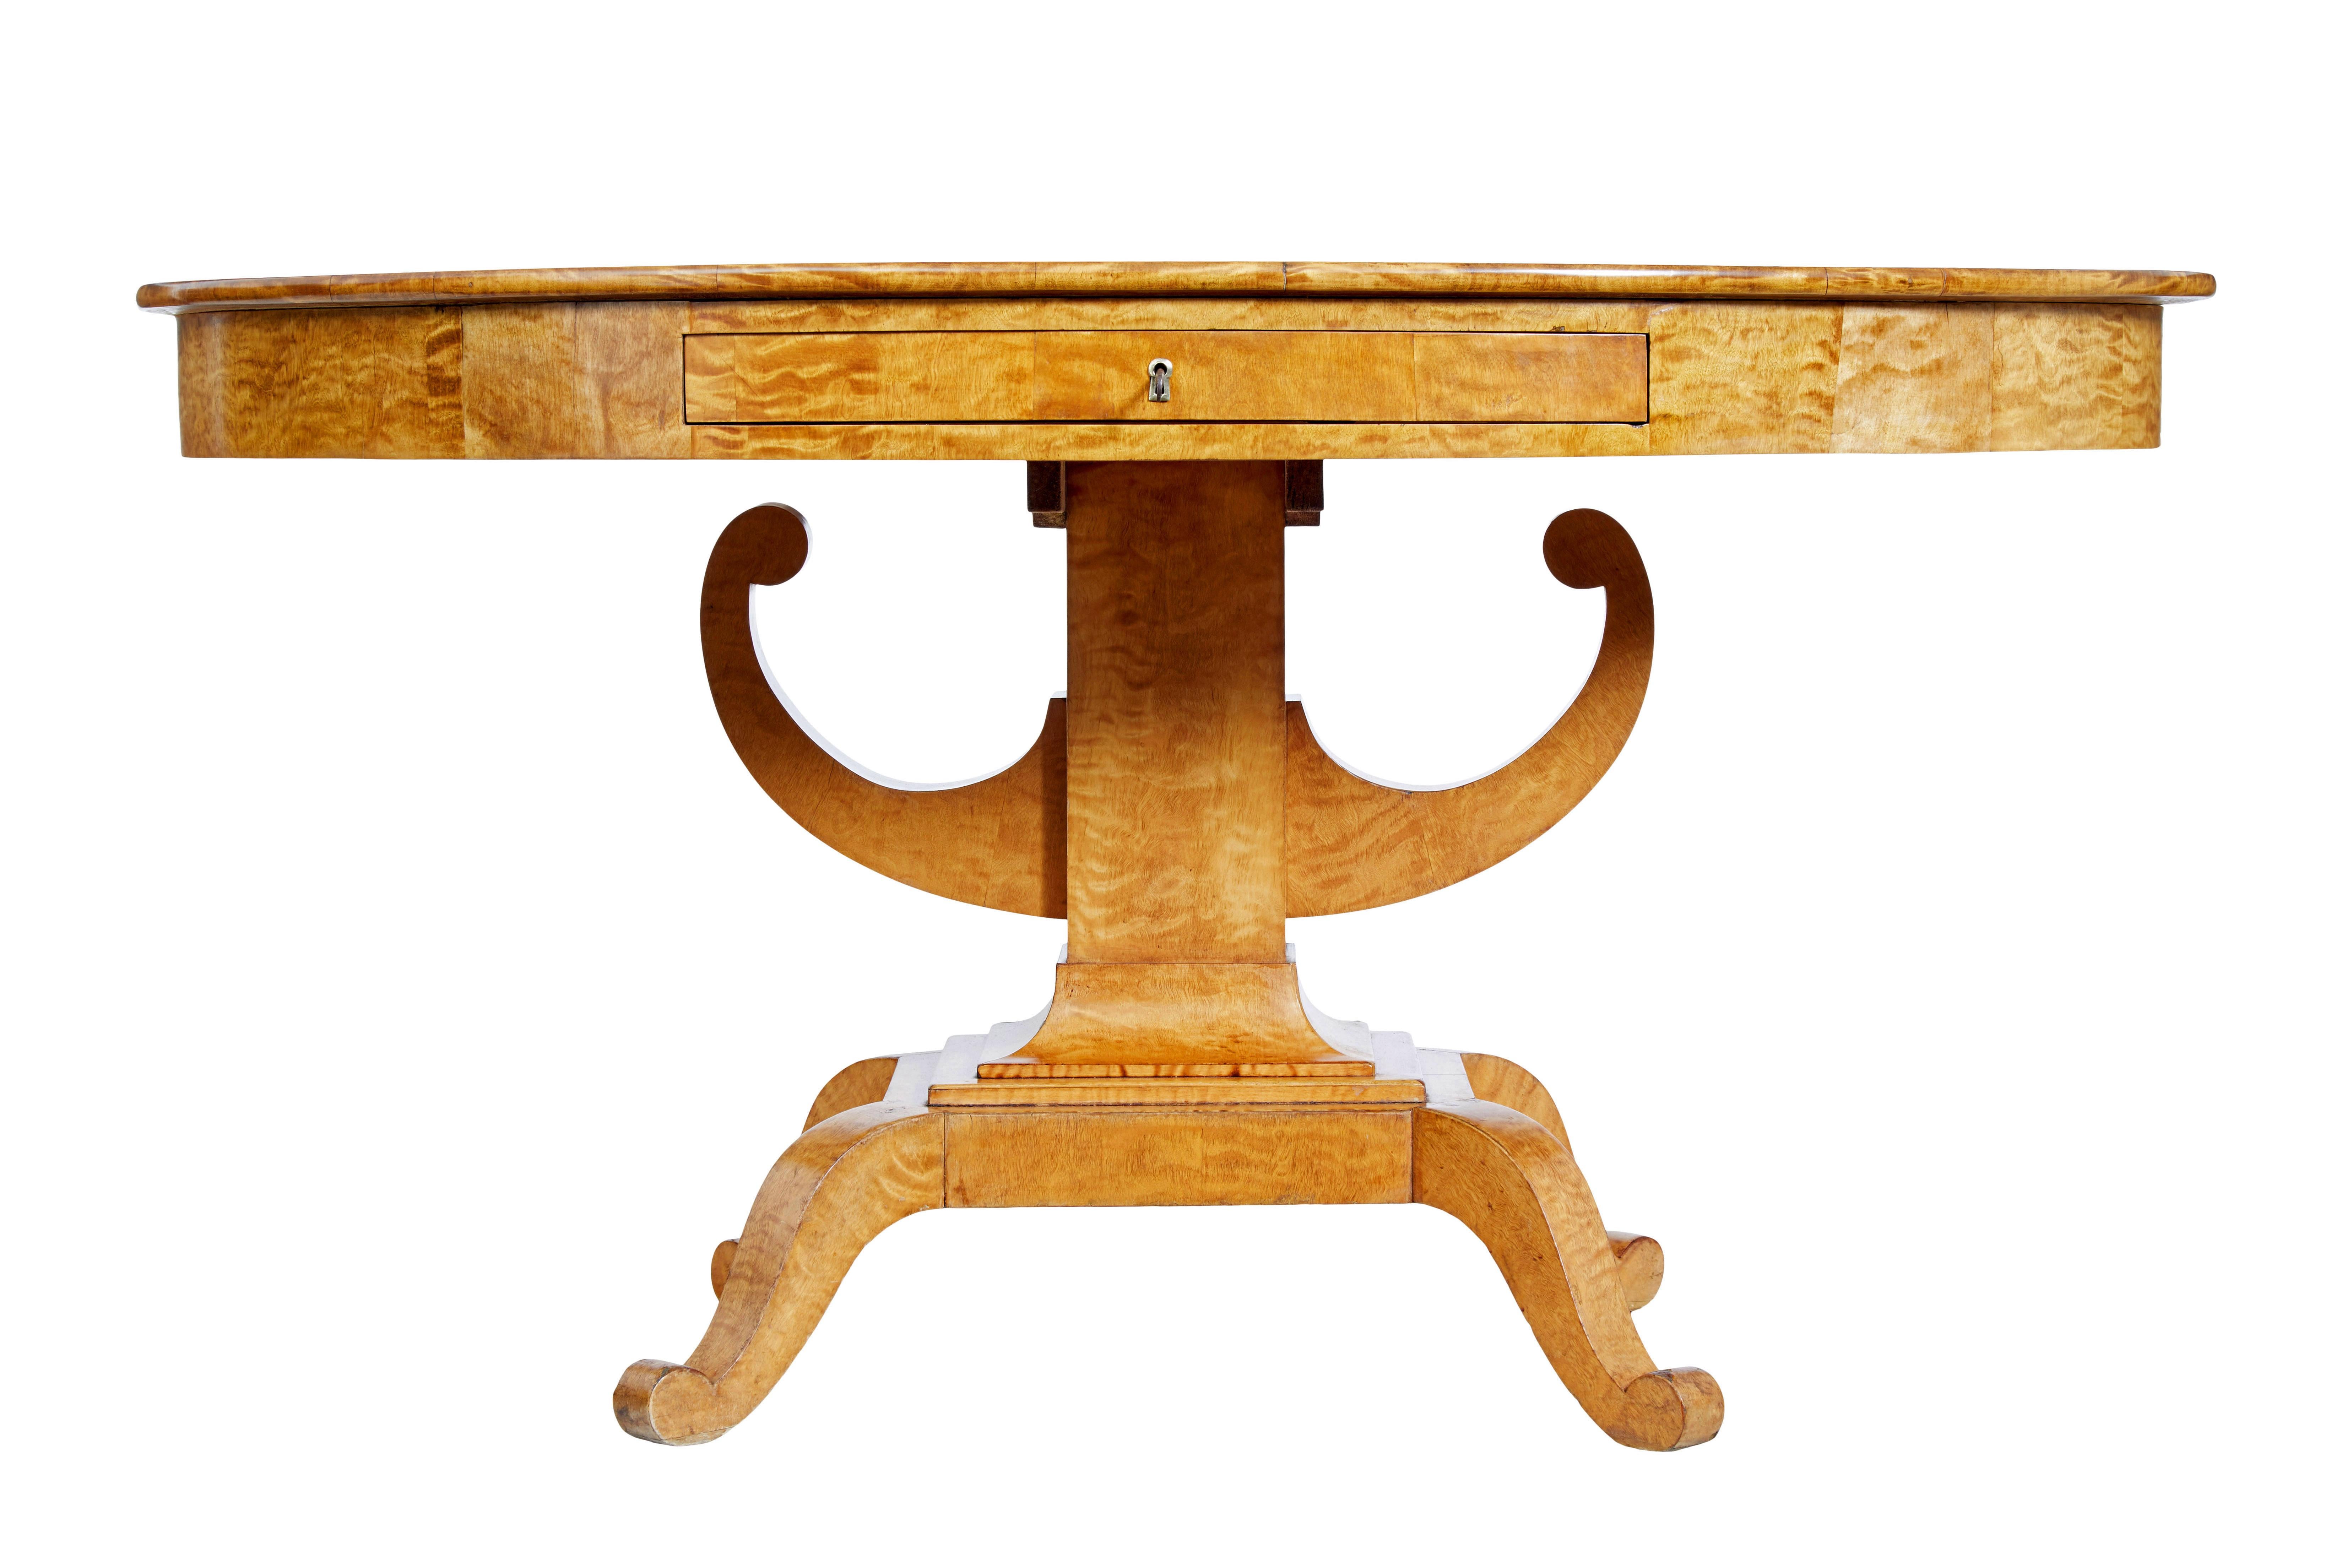 Oval 19. Jahrhundert Birke Reich Mitte Tisch circa 1860

Schöner Mitteltisch aus schwedischer Birke.  Ovale Tischplatte mit abgestimmten Birkenfurnieren und markanter Maserung.  Tiefer Freiraum mit einer Schublade an der Vorderseite.  Gestützt auf